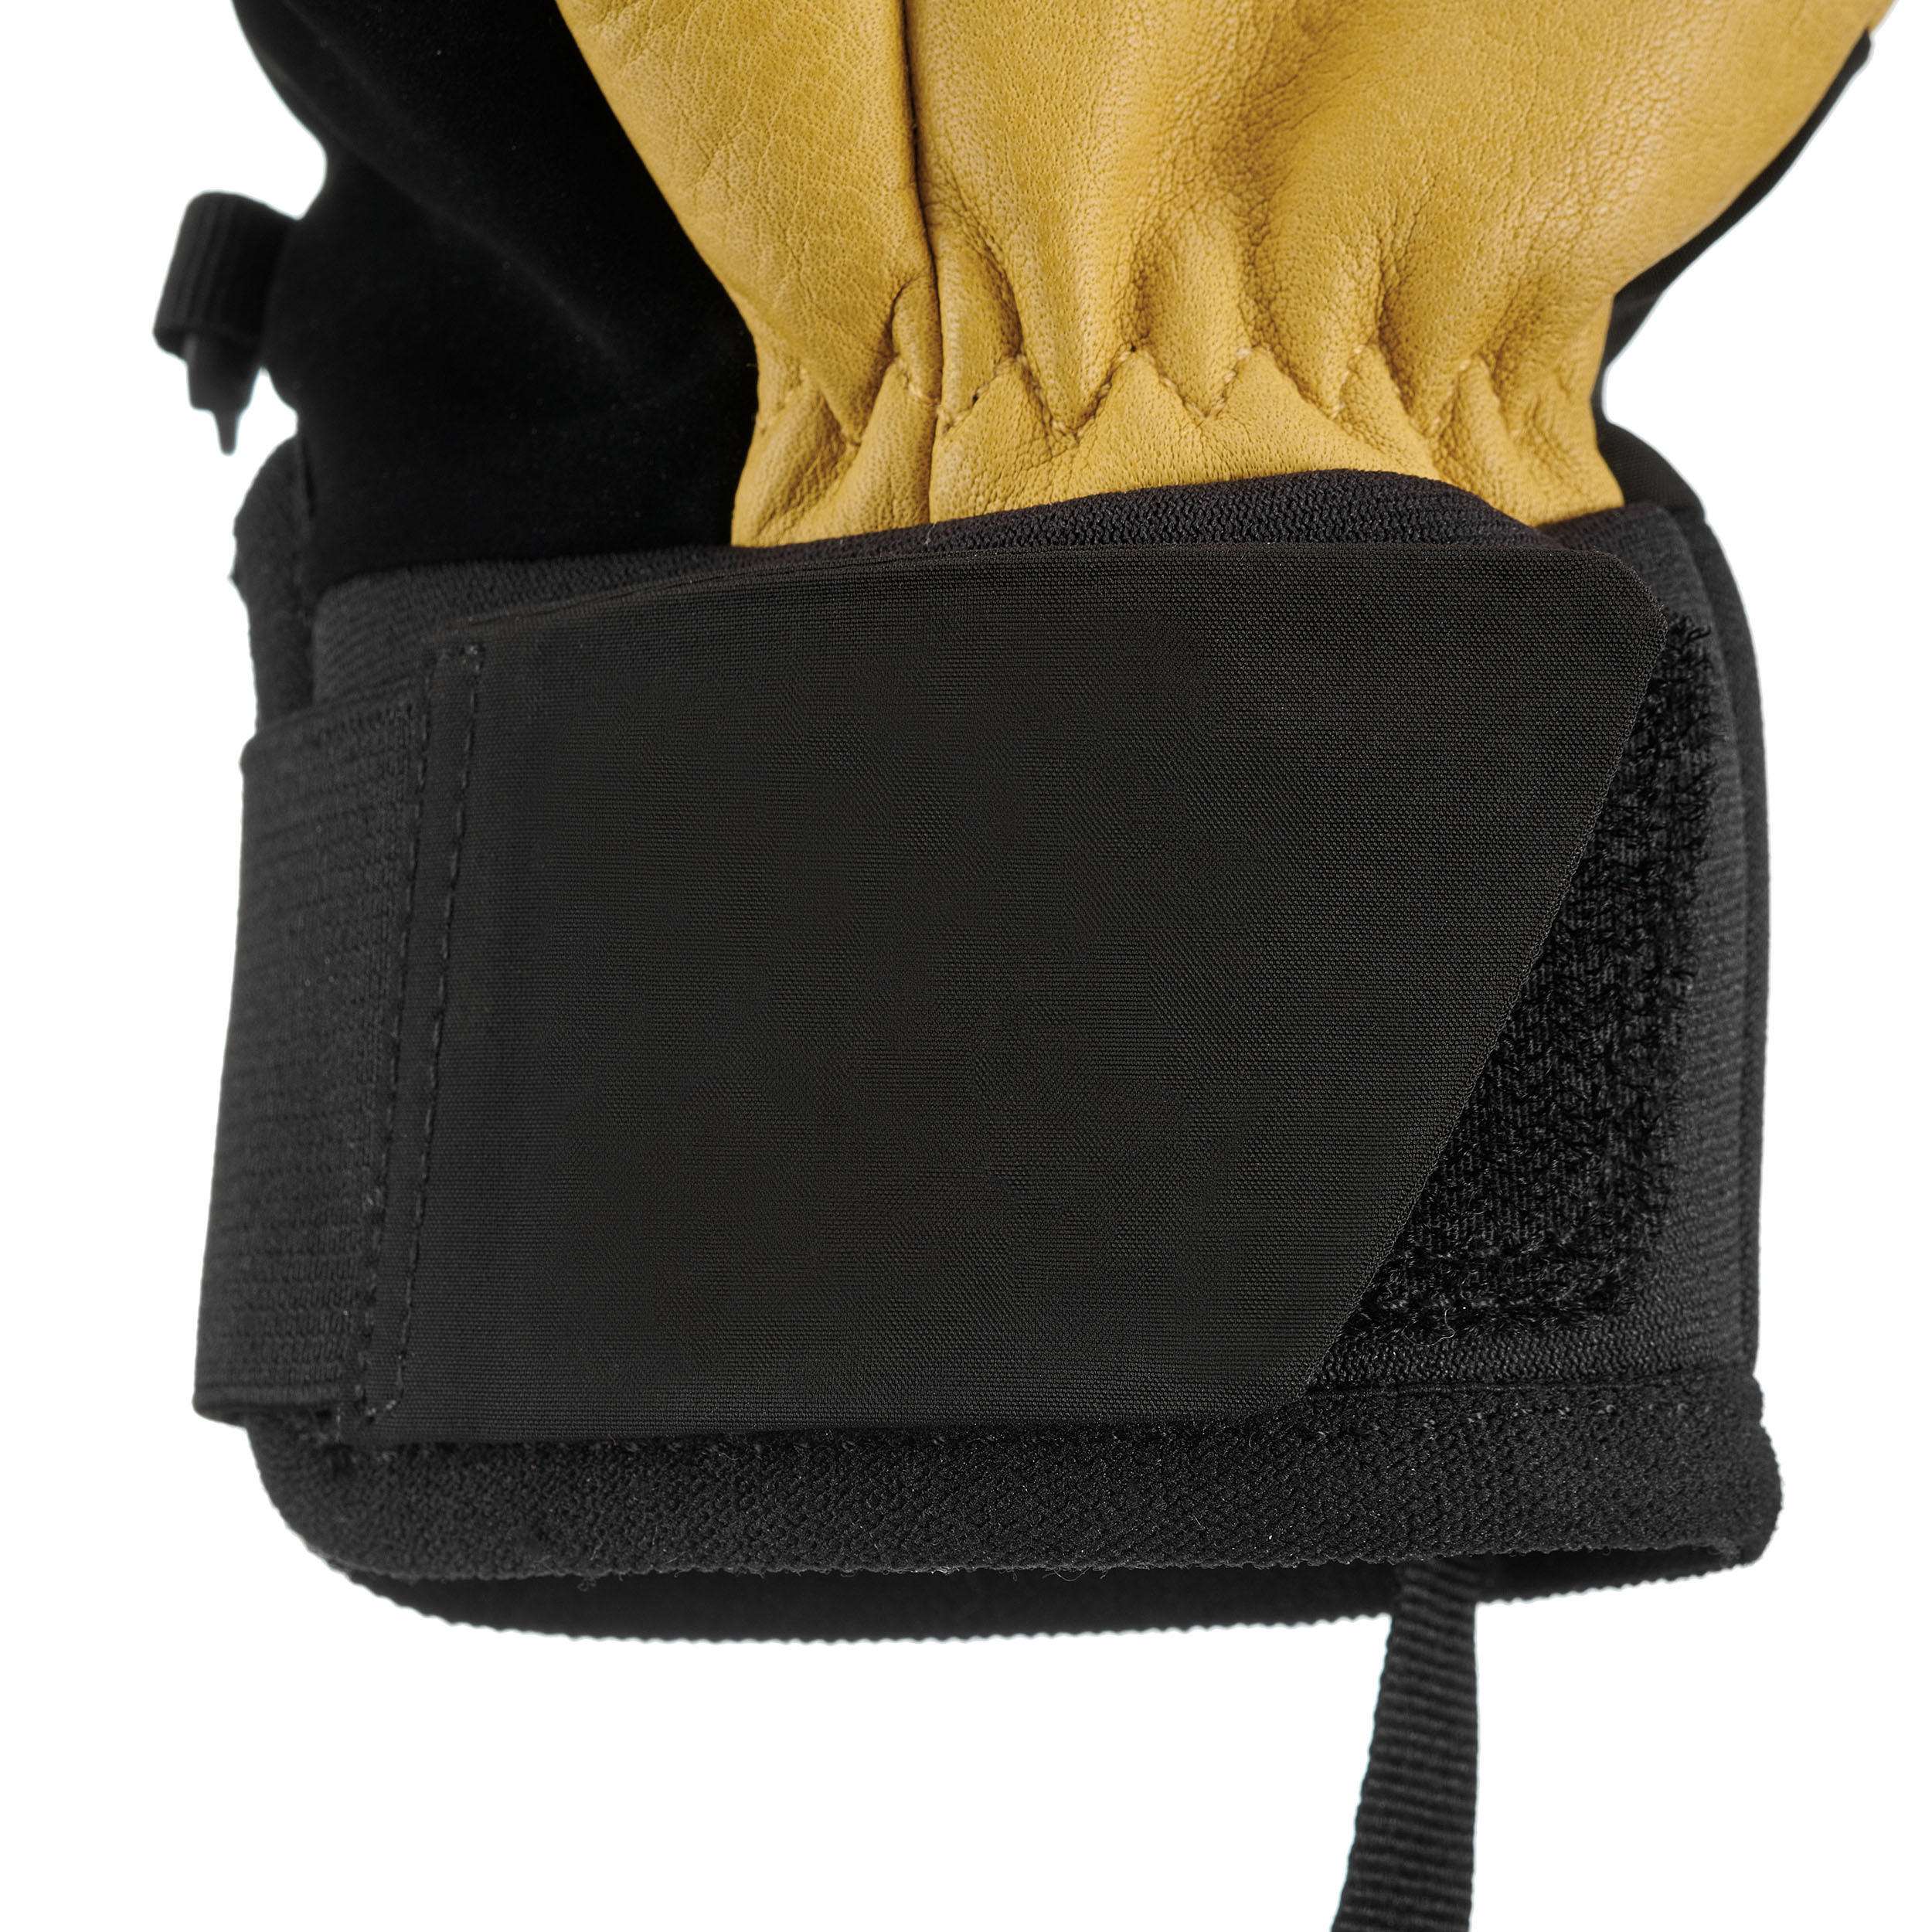 Gants de ski – 550 chauds jaune/noir - WEDZE